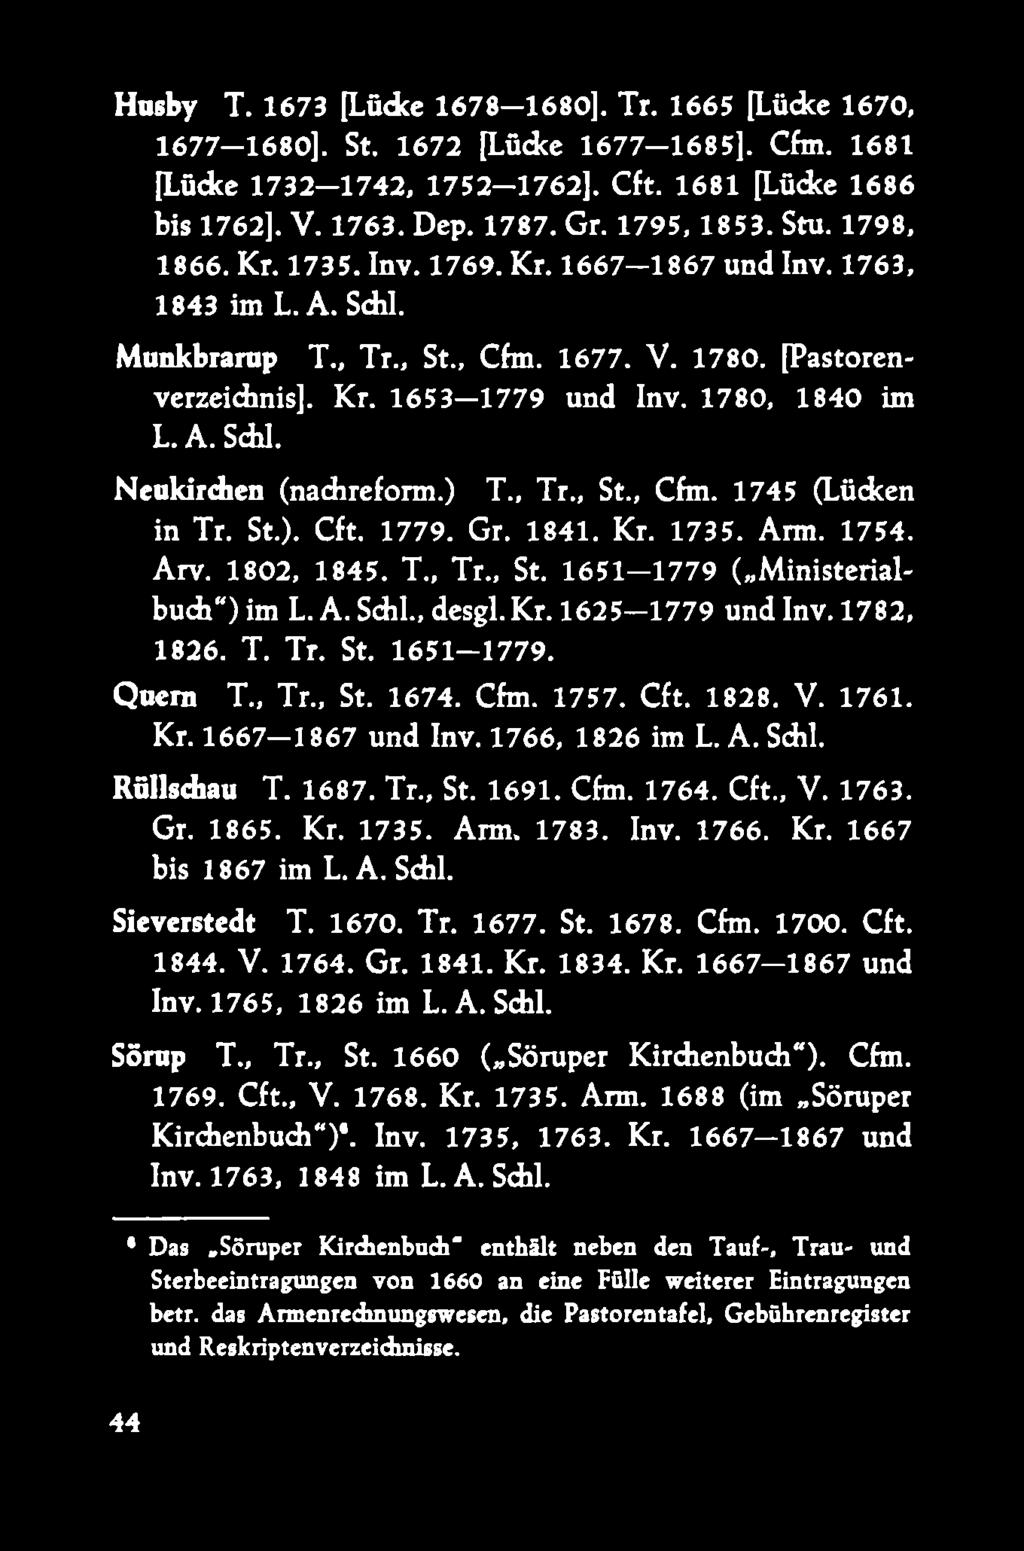 1780, 1840 im L.A. Schl. Neukirchen (nadireform.) T., Tr., St., Cfm. 1745 (Lücken in Tr. St.). Cft. 1779. Gr. 1841. Kr. 1735. Arm. 1754. Arv. 1802, 1845. T., Tr., St. 1651-1779 ( Ministerialbuch )im L.